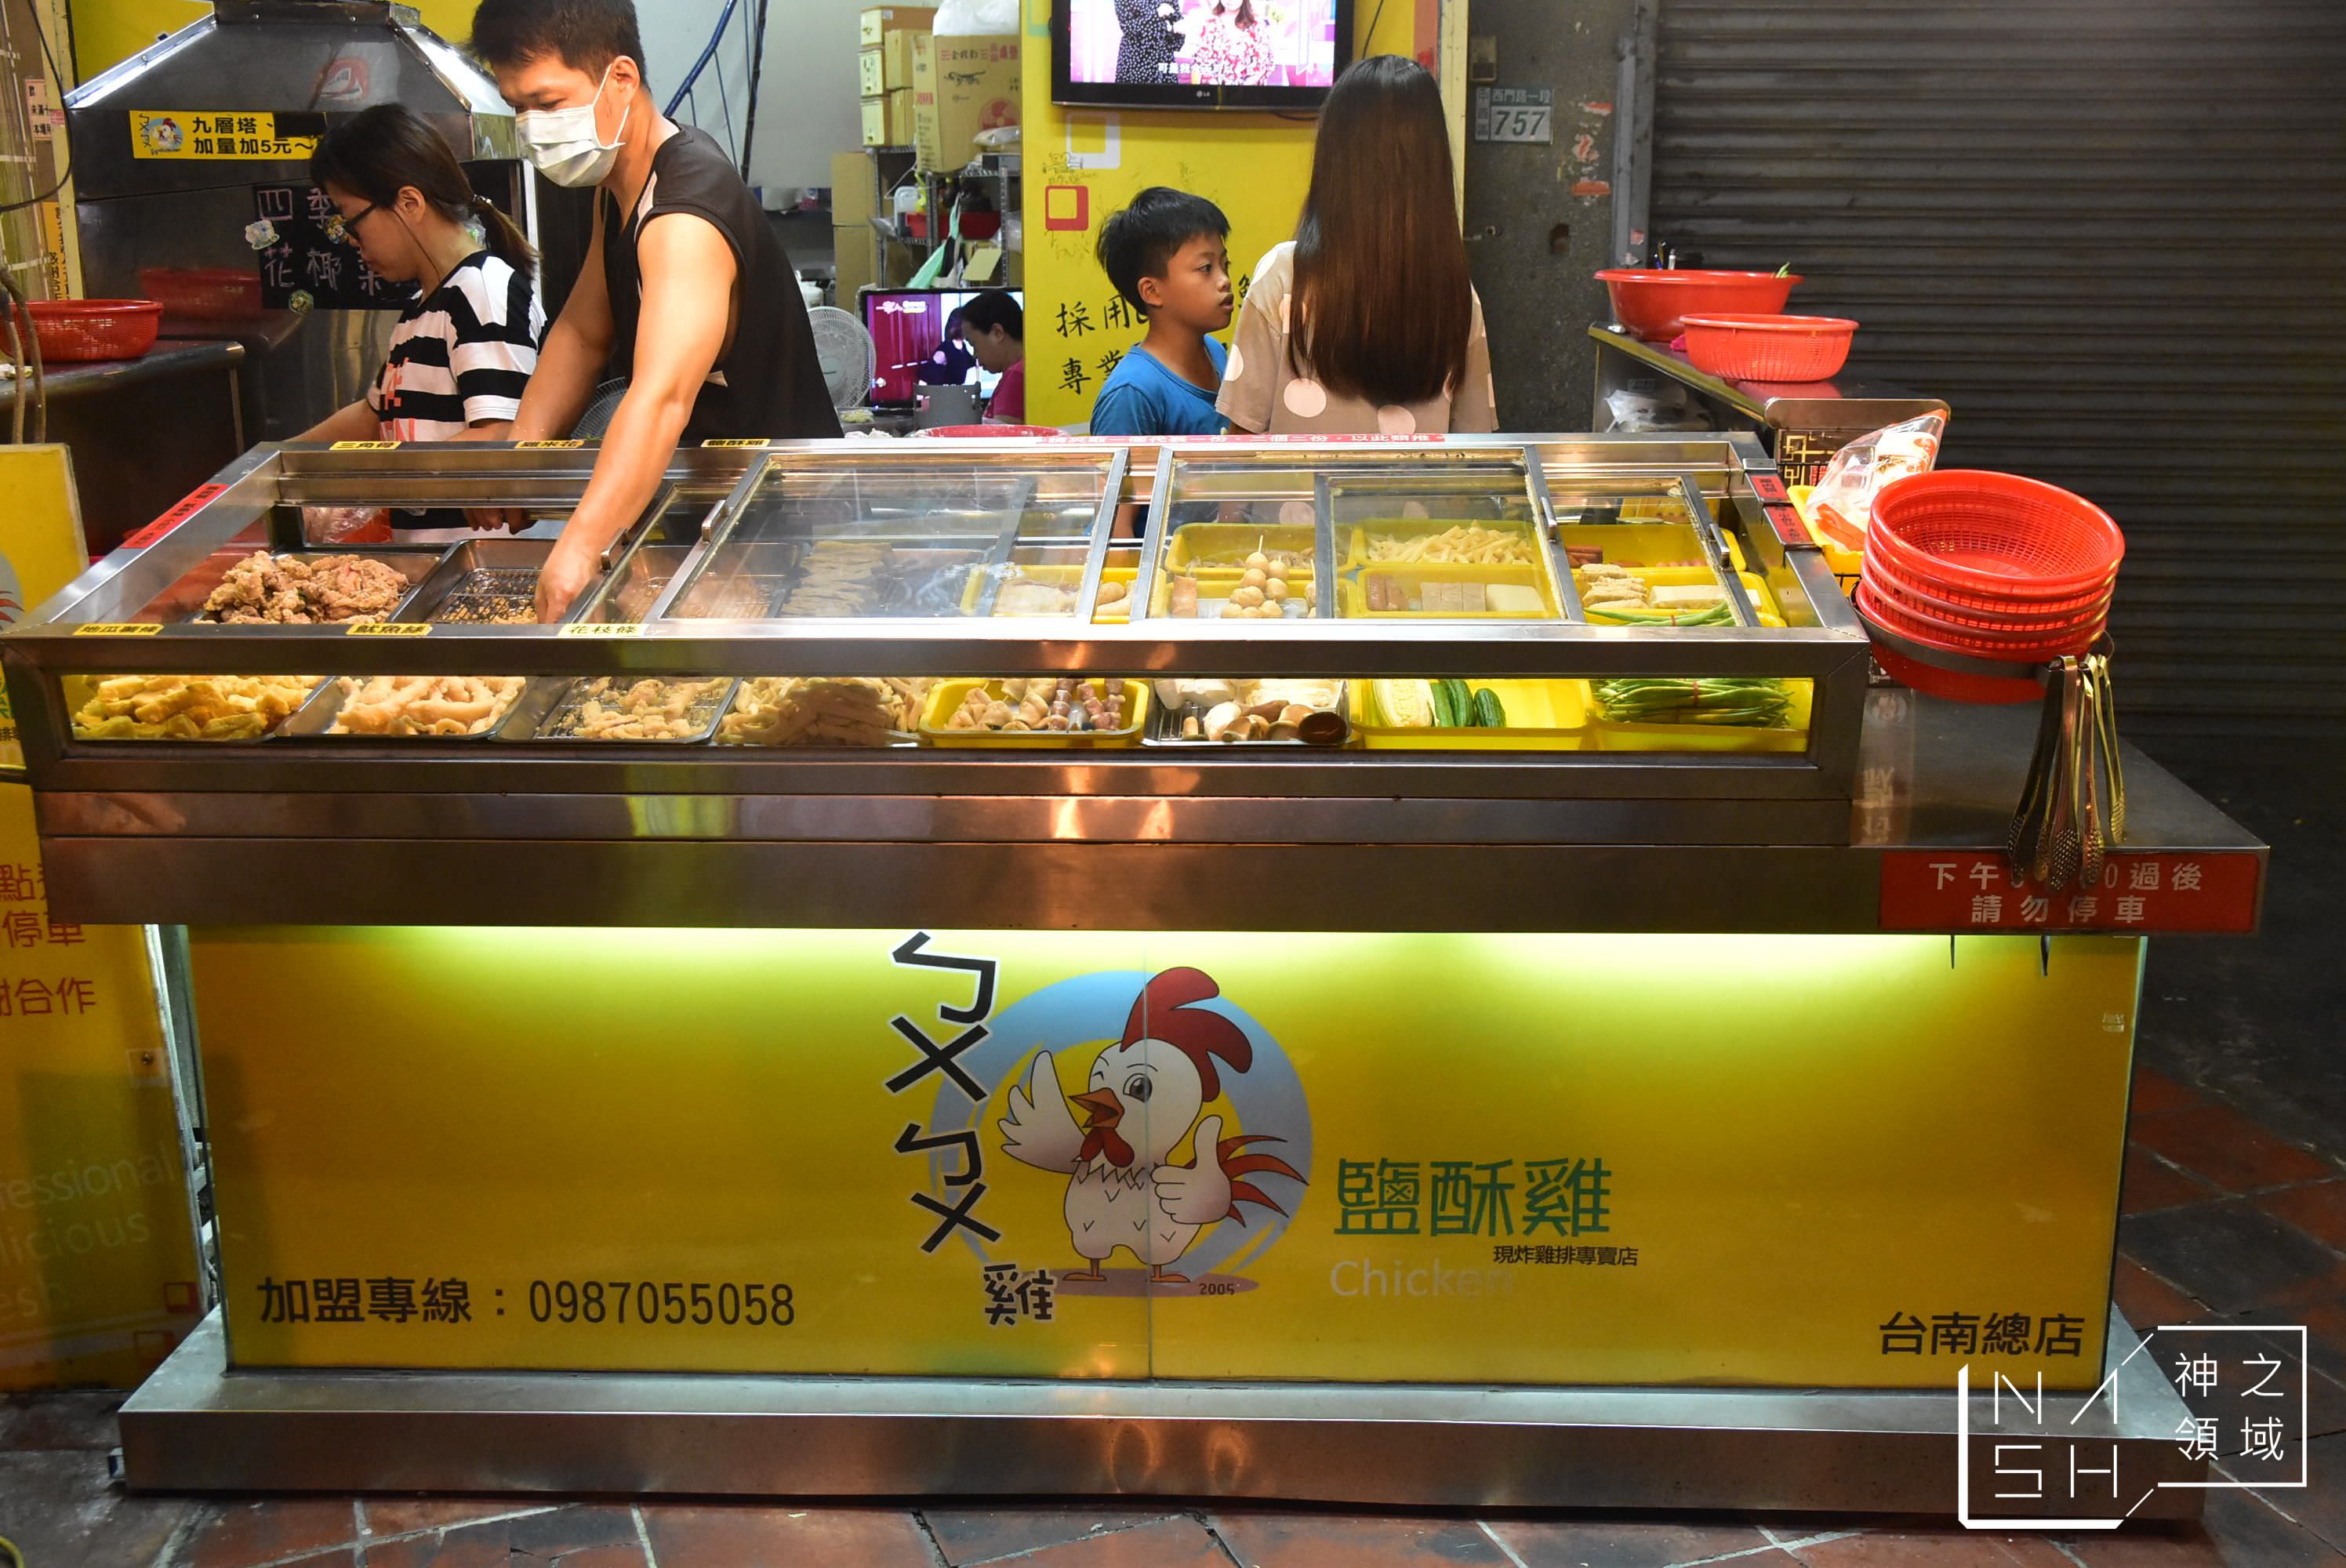 ㄅㄨ ㄅㄨ 鹹酥雞,台南鹹酥雞